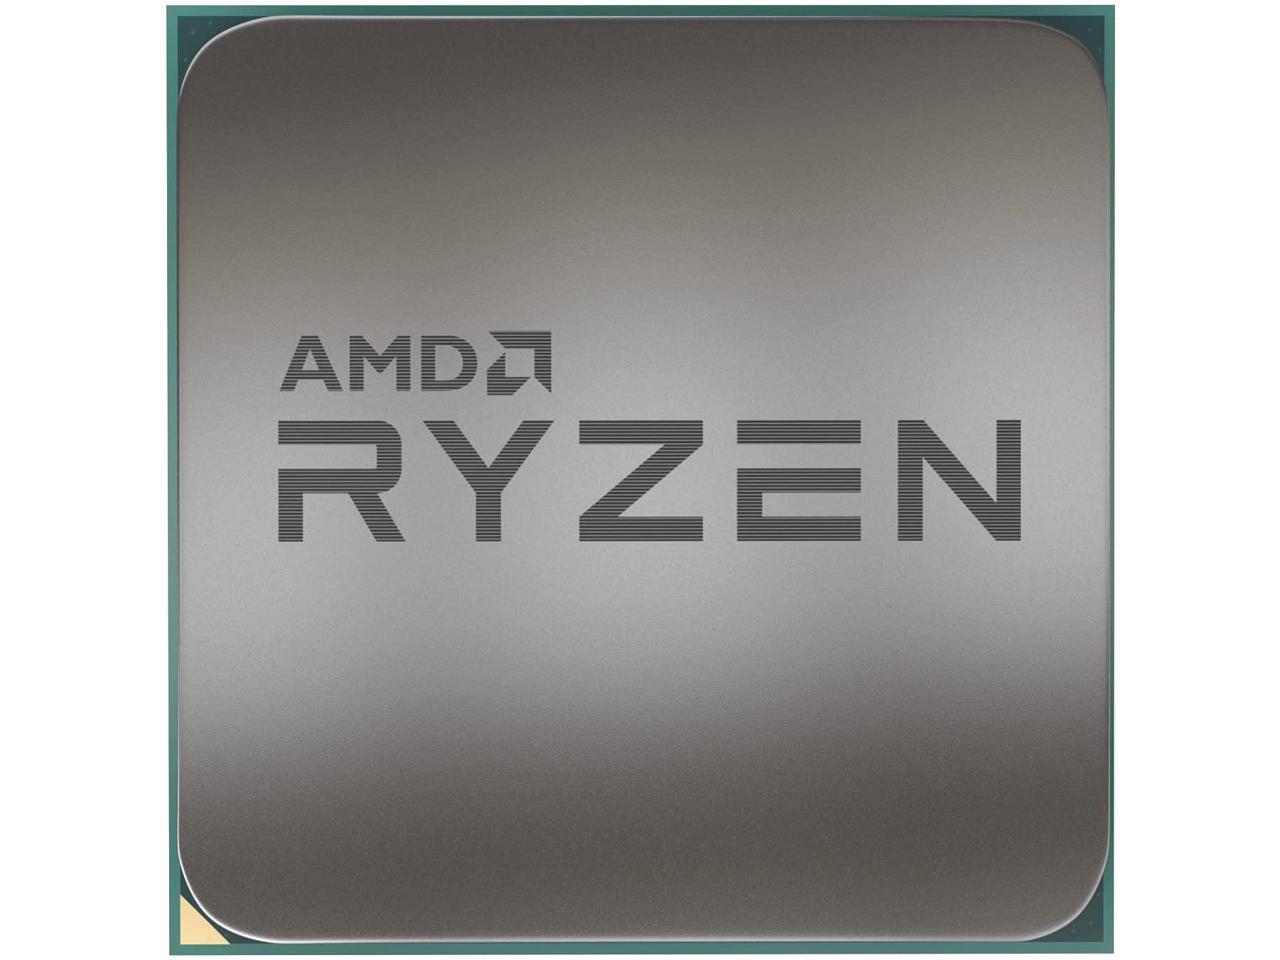 Amd Ryzen 9 5900X 100-100000061Wof Processor 12-Core 3.7Ghz Socket Am4 Cpu W/O Fan, Retail